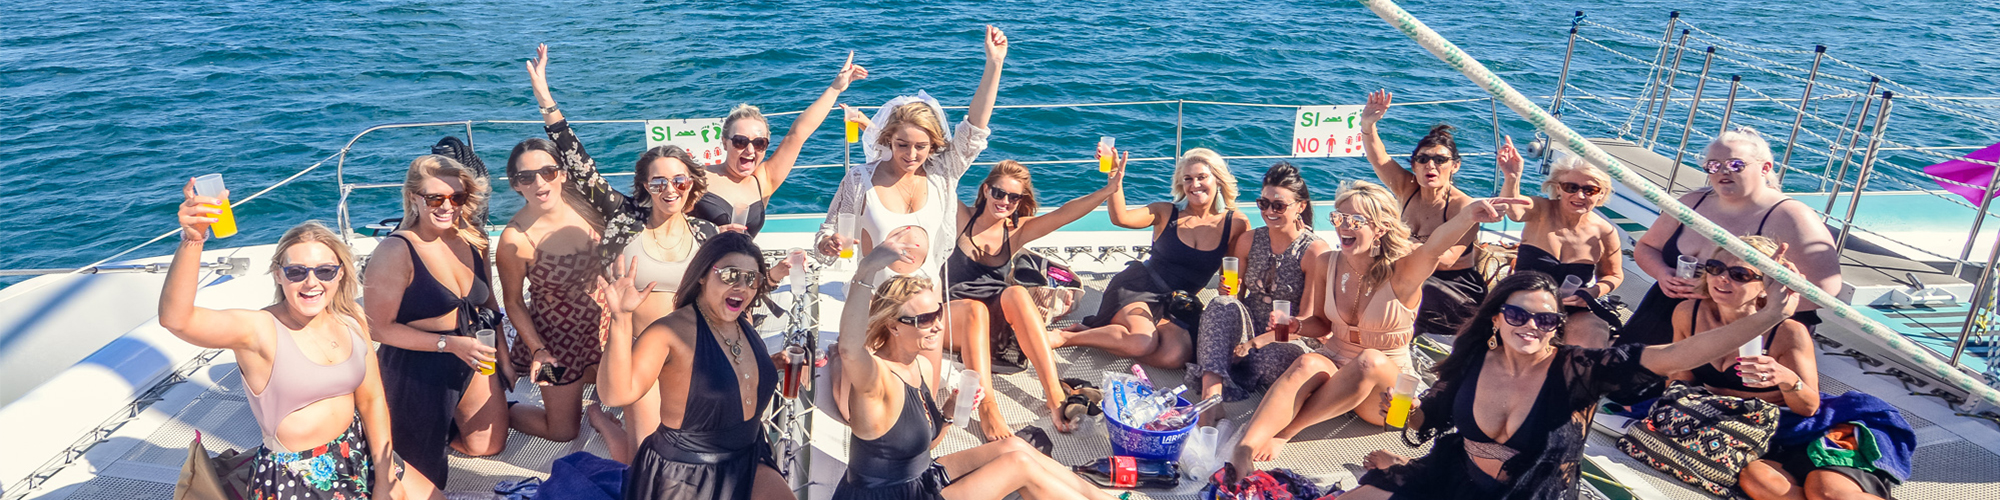 Marbella Boat party